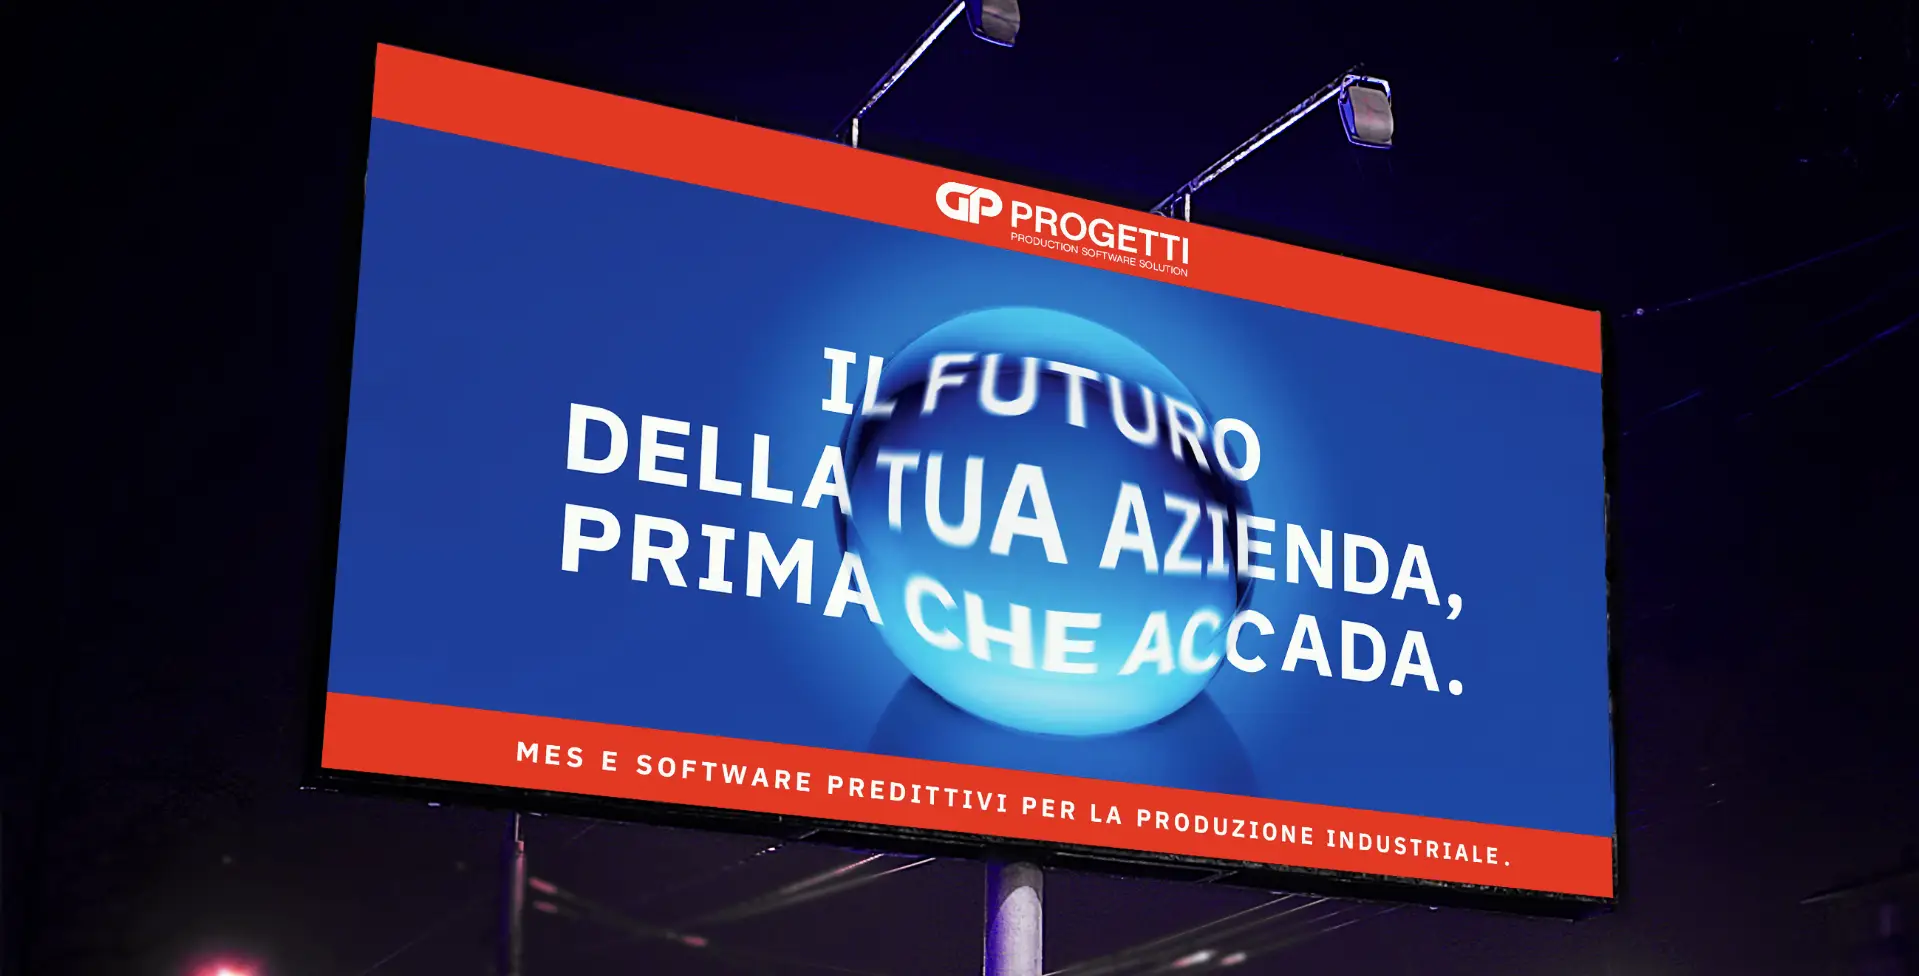 Dexa: realizzazione campagna pubblicitaria per GP Progetti